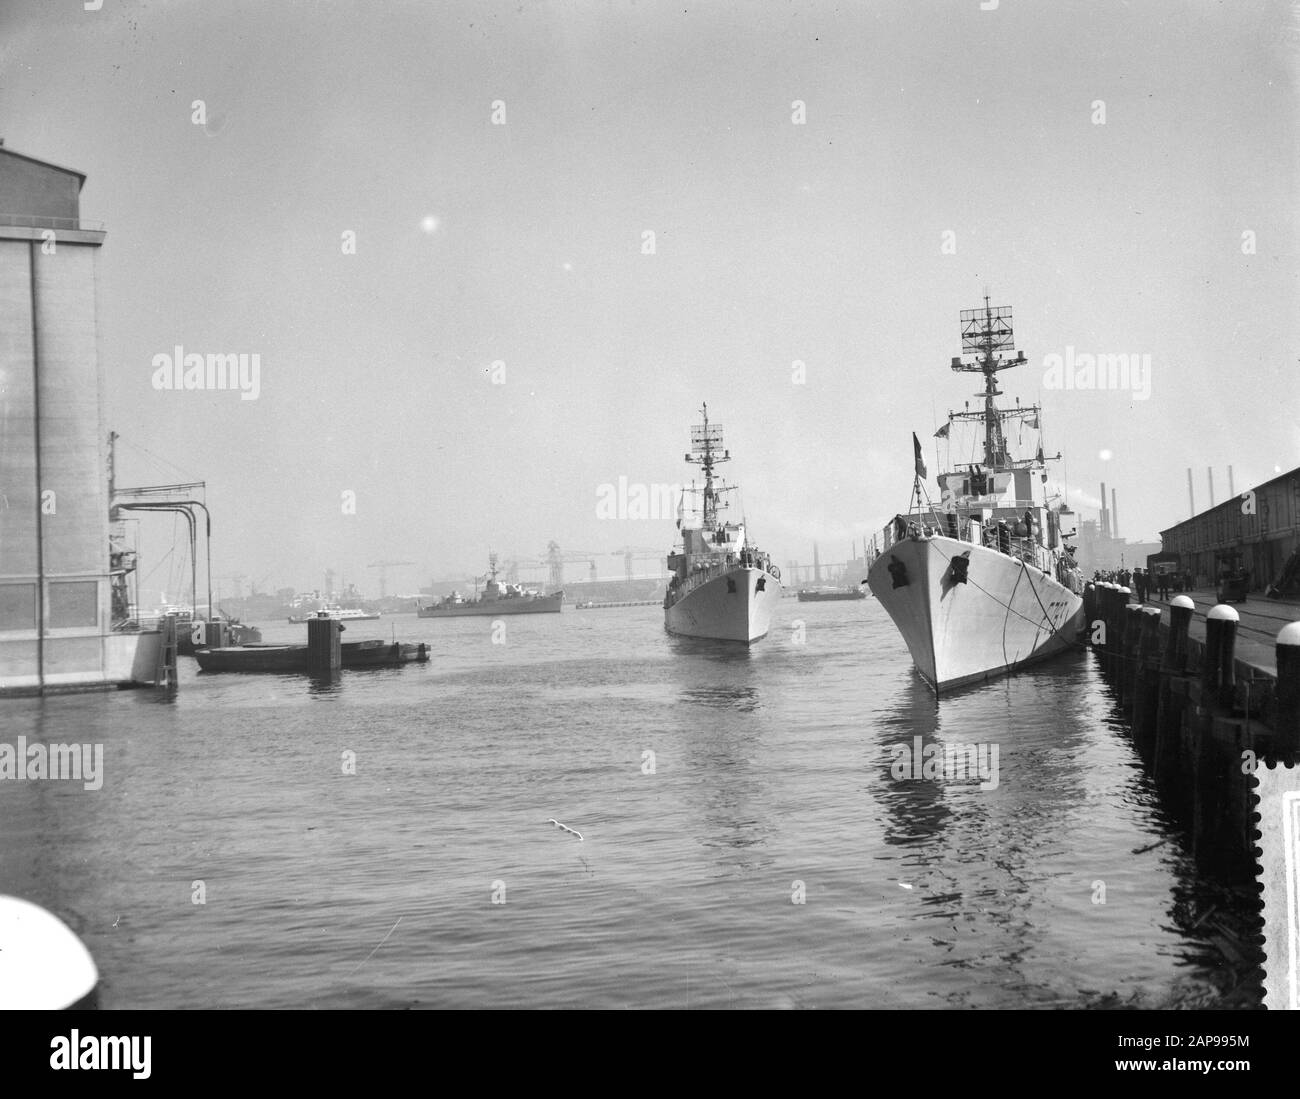 Arrivo di cinque navi da guerra francesi Data: 19 agosto 1959 luogo: Amsterdam Parole Chiave: Porti, marina, navi militari Foto Stock